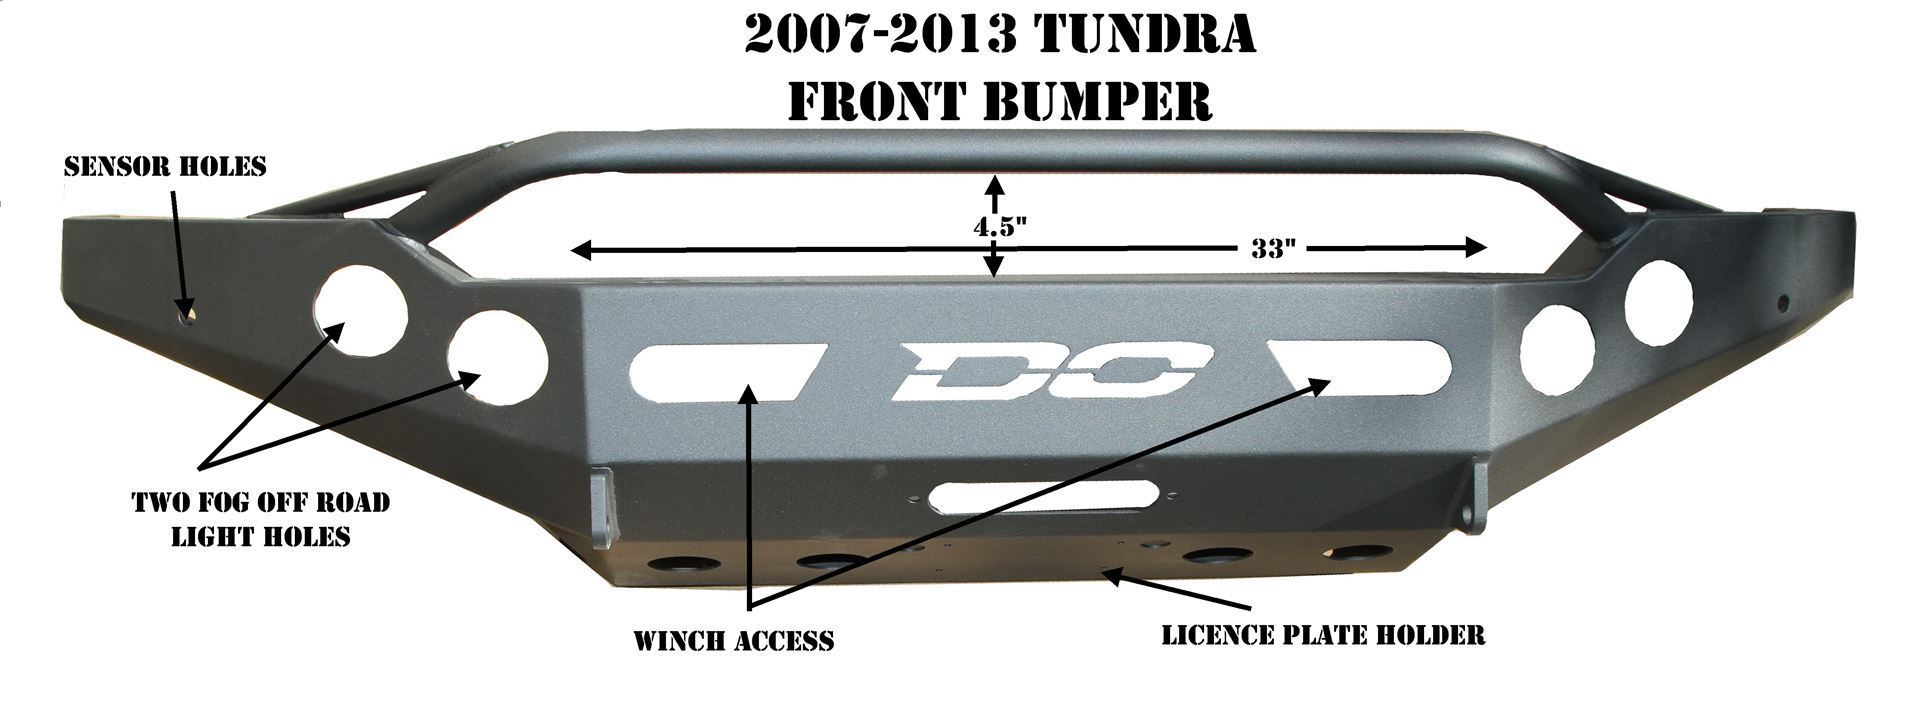 Demello Off-Road Tundra Front winch bumper 07-13